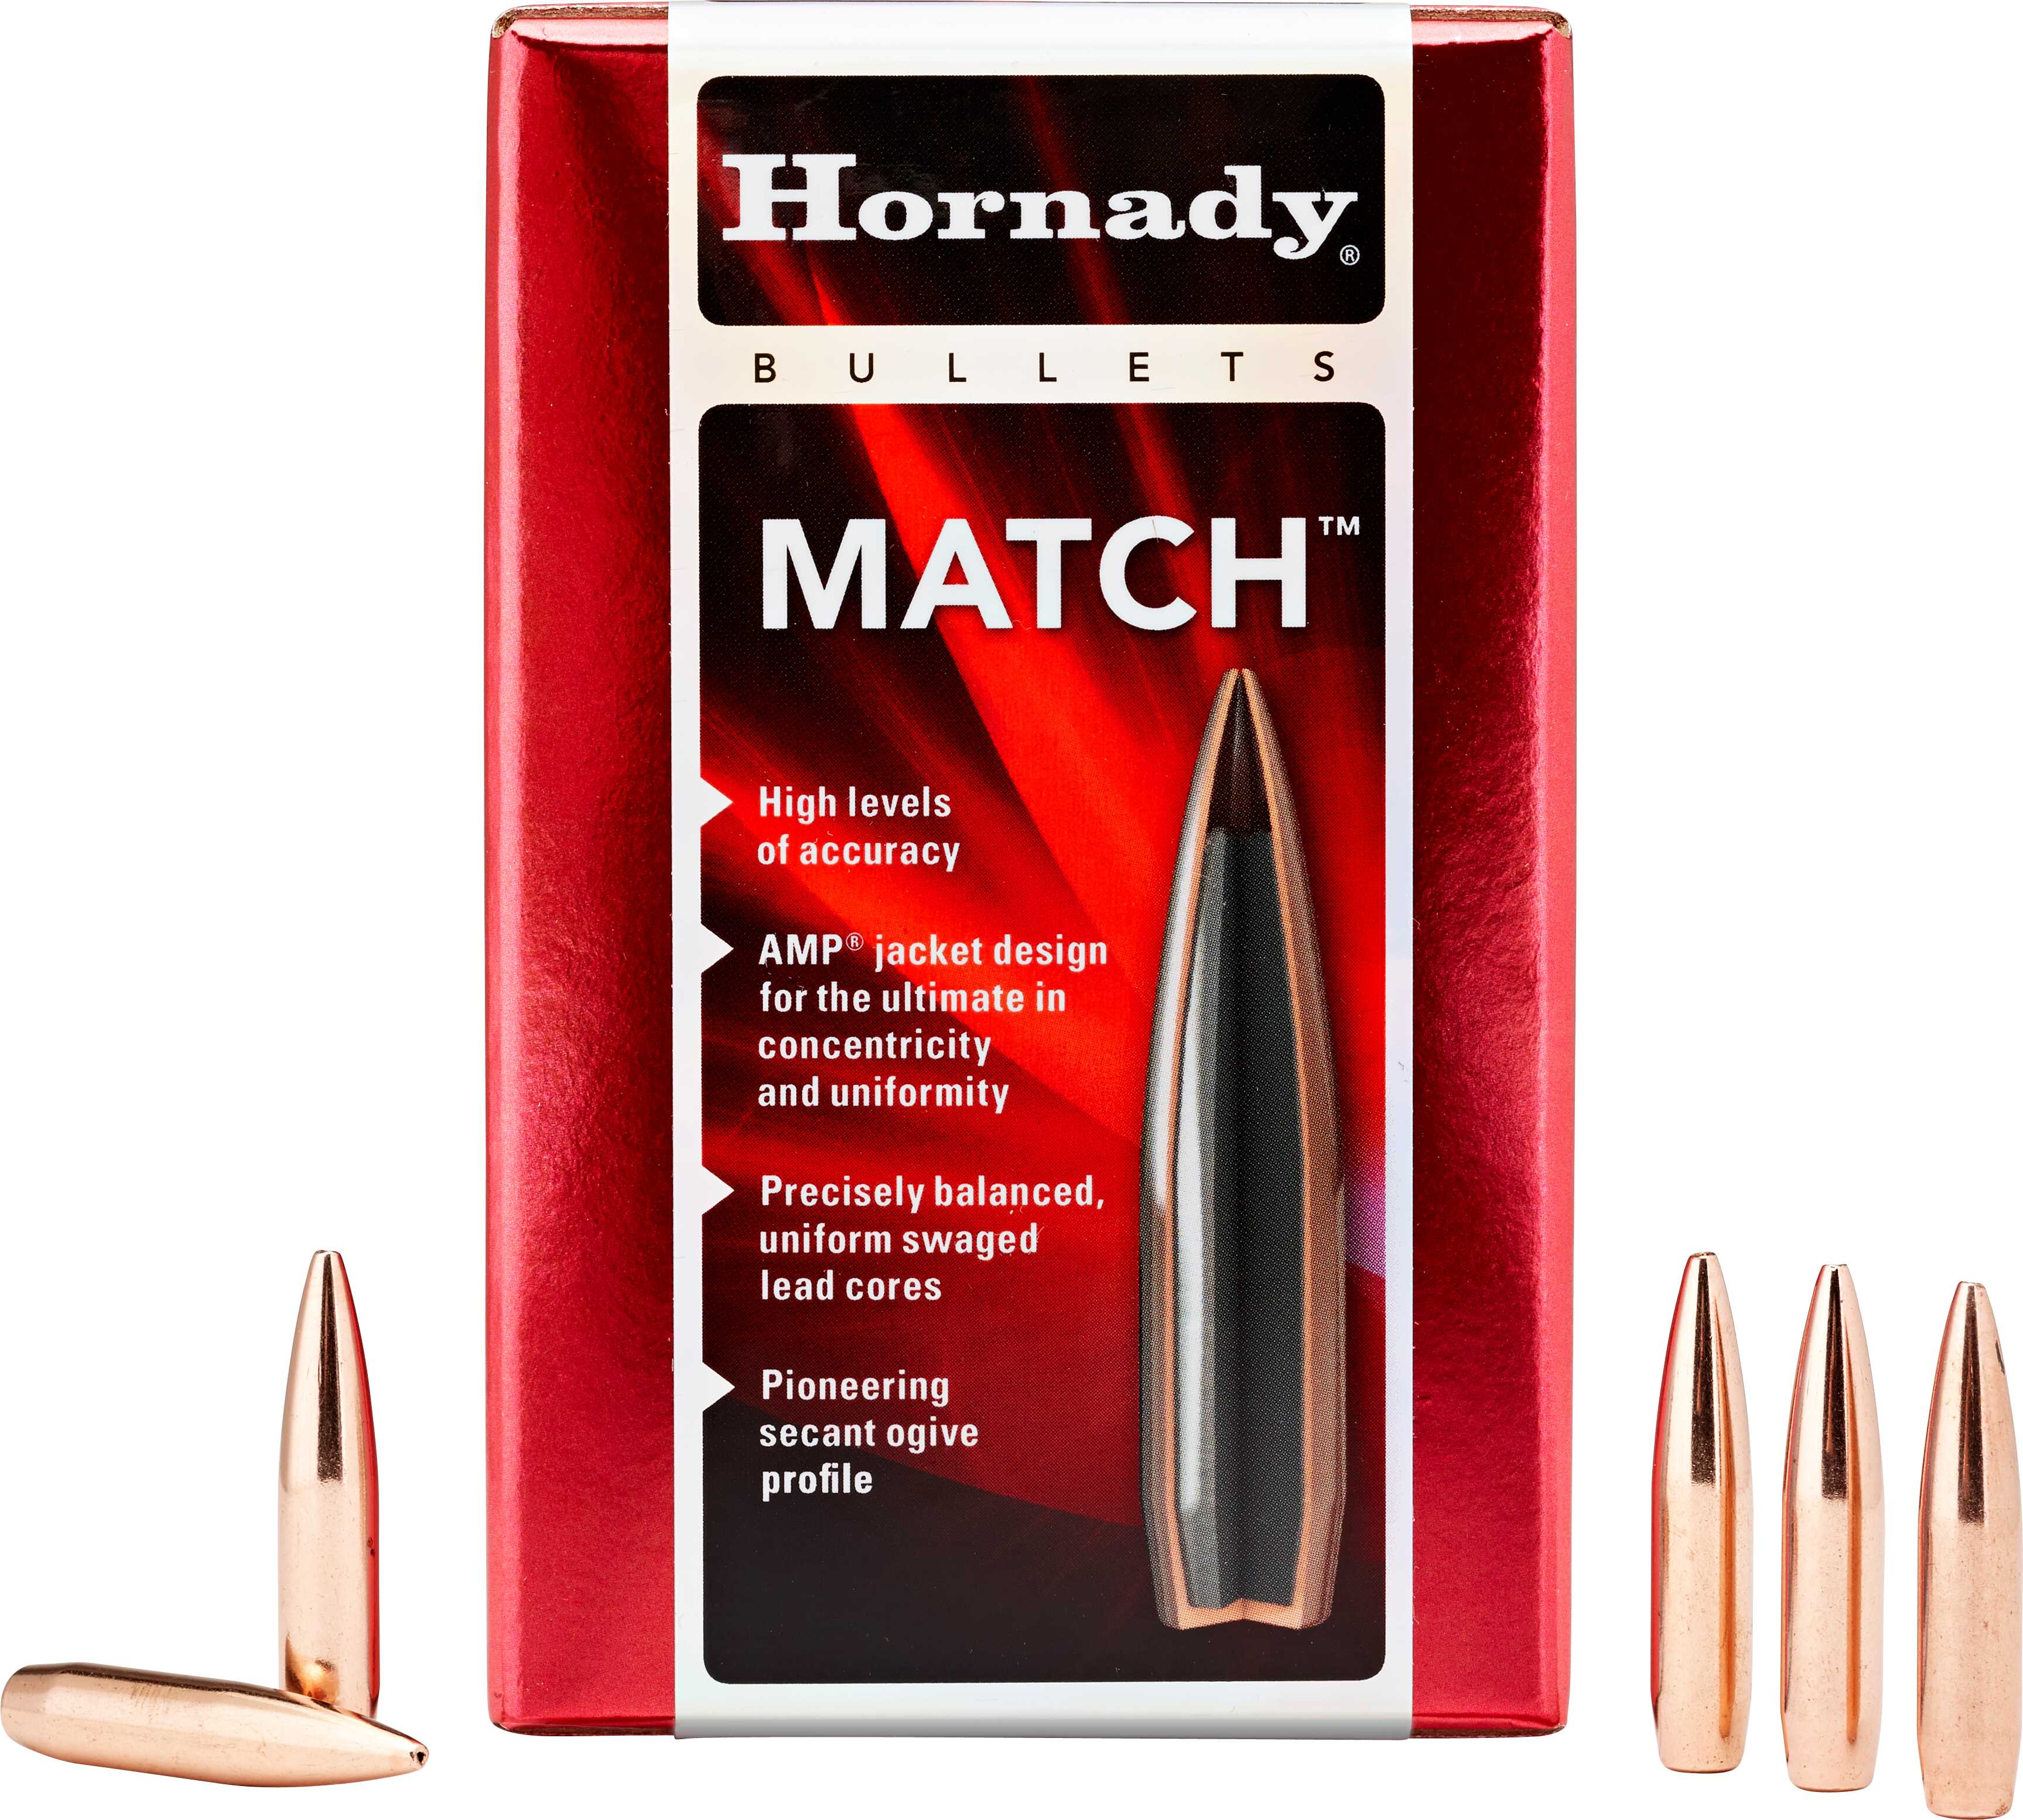 Hornady Bullet 22 Caliber 68 Grain BTHP Match .224" 100/Box